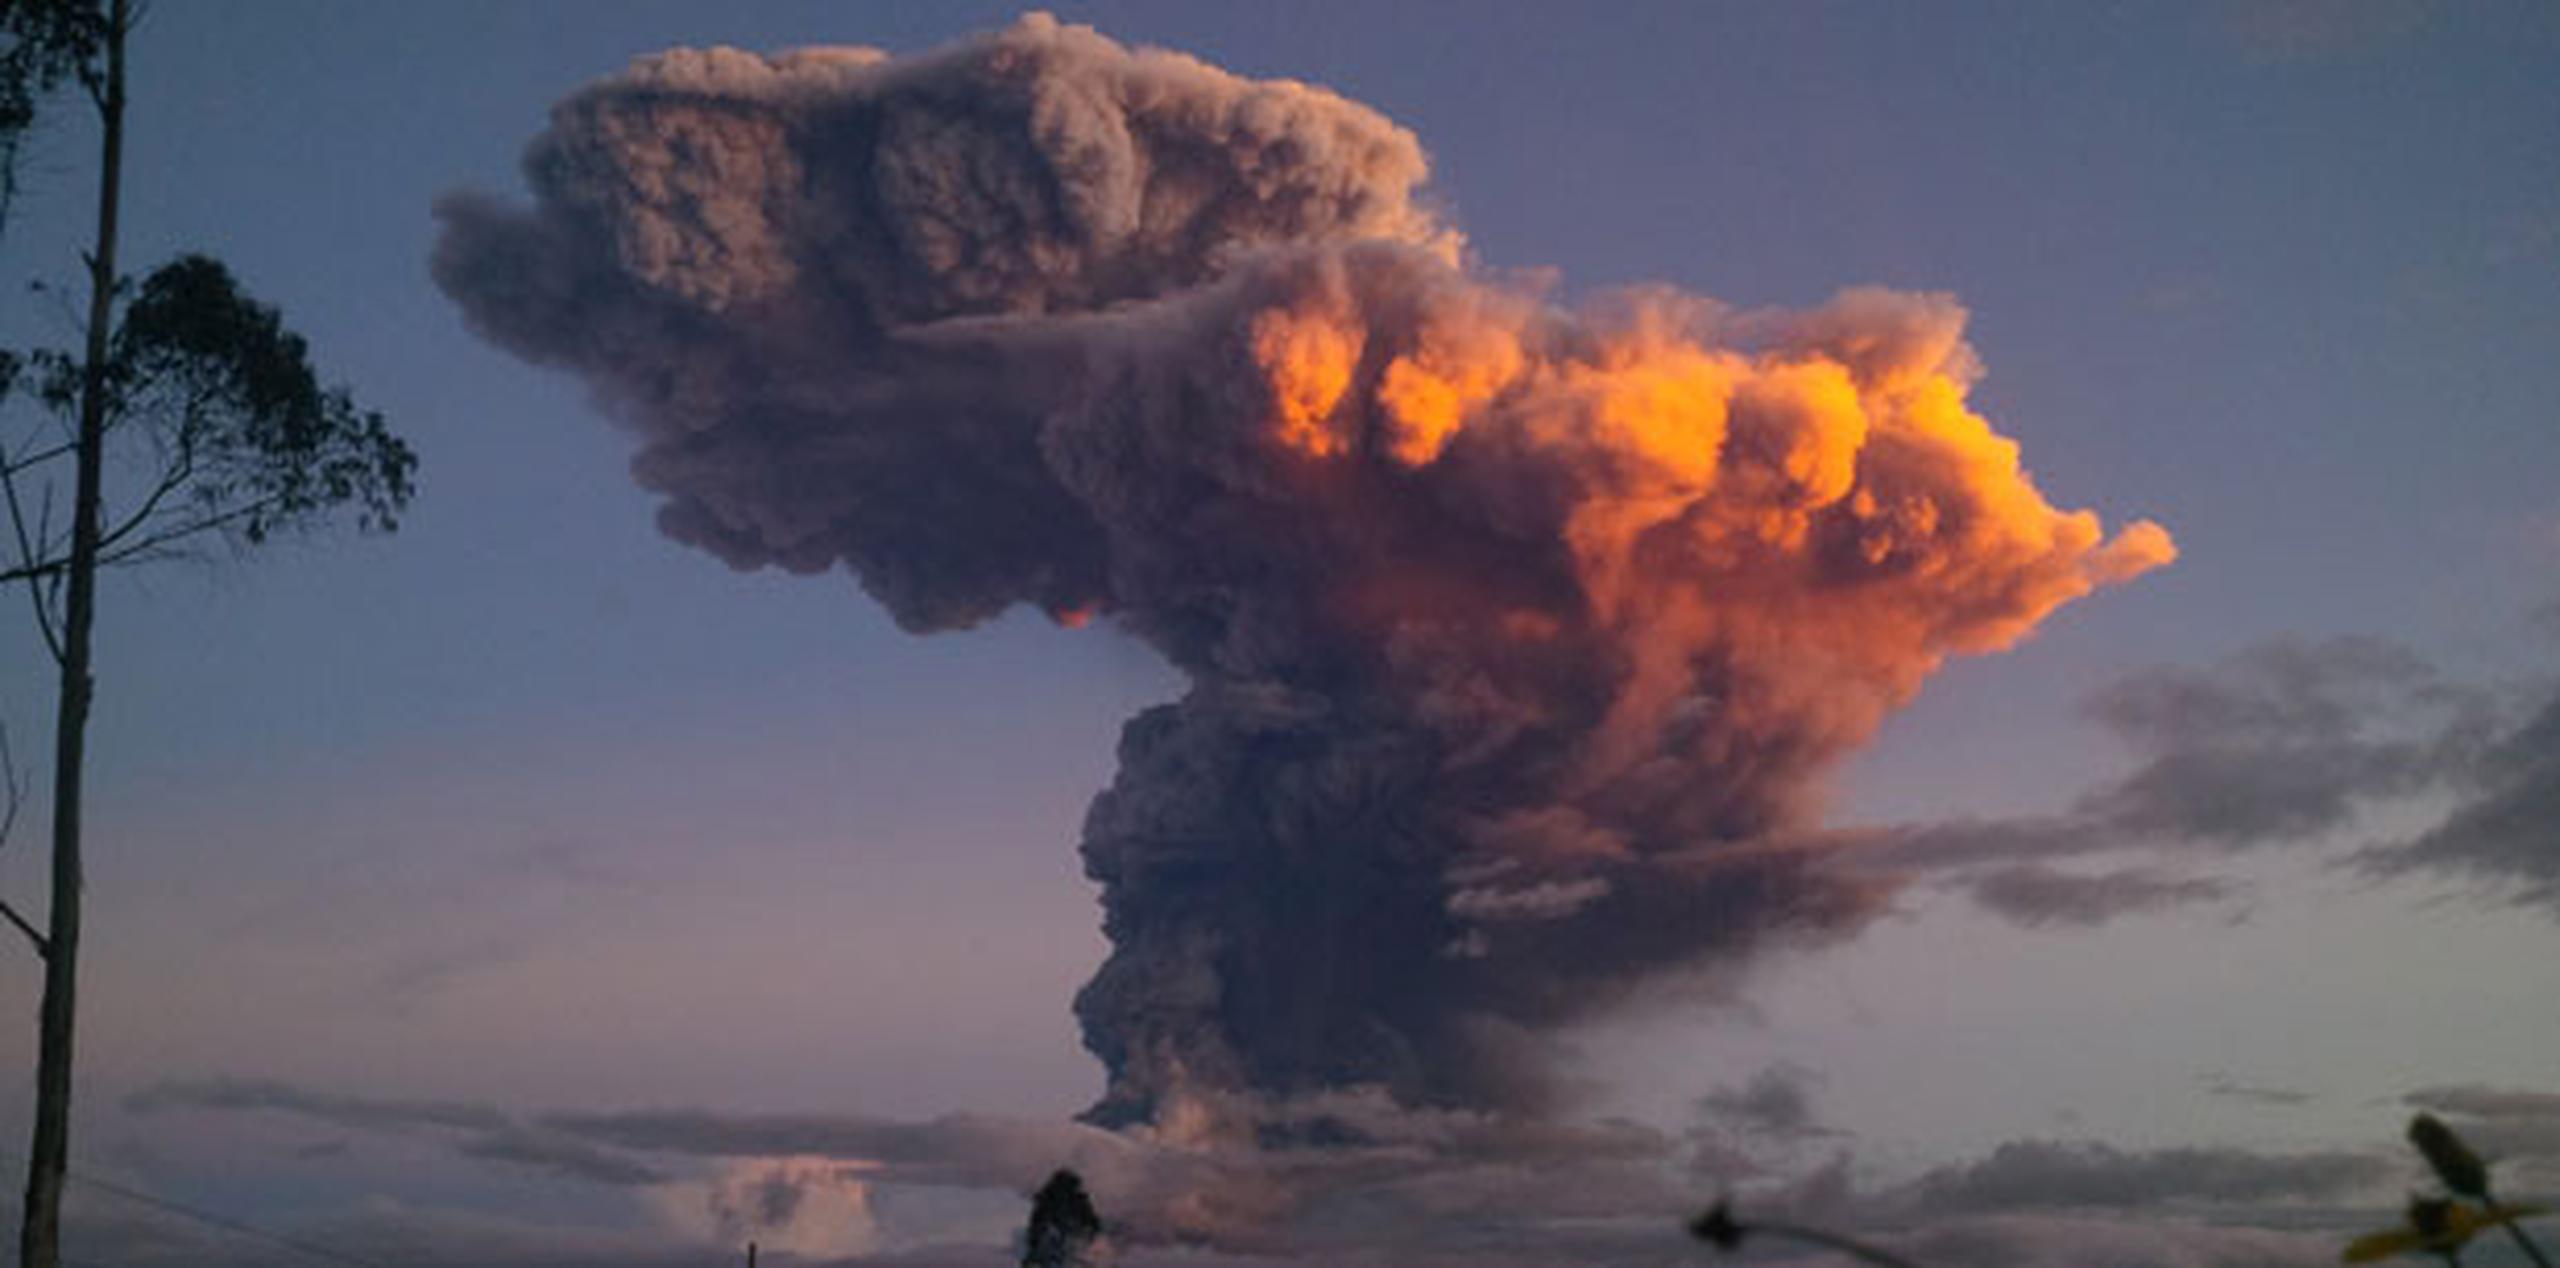 El volcán ha hecho erupción esporádicamente desde 1999. (AP)